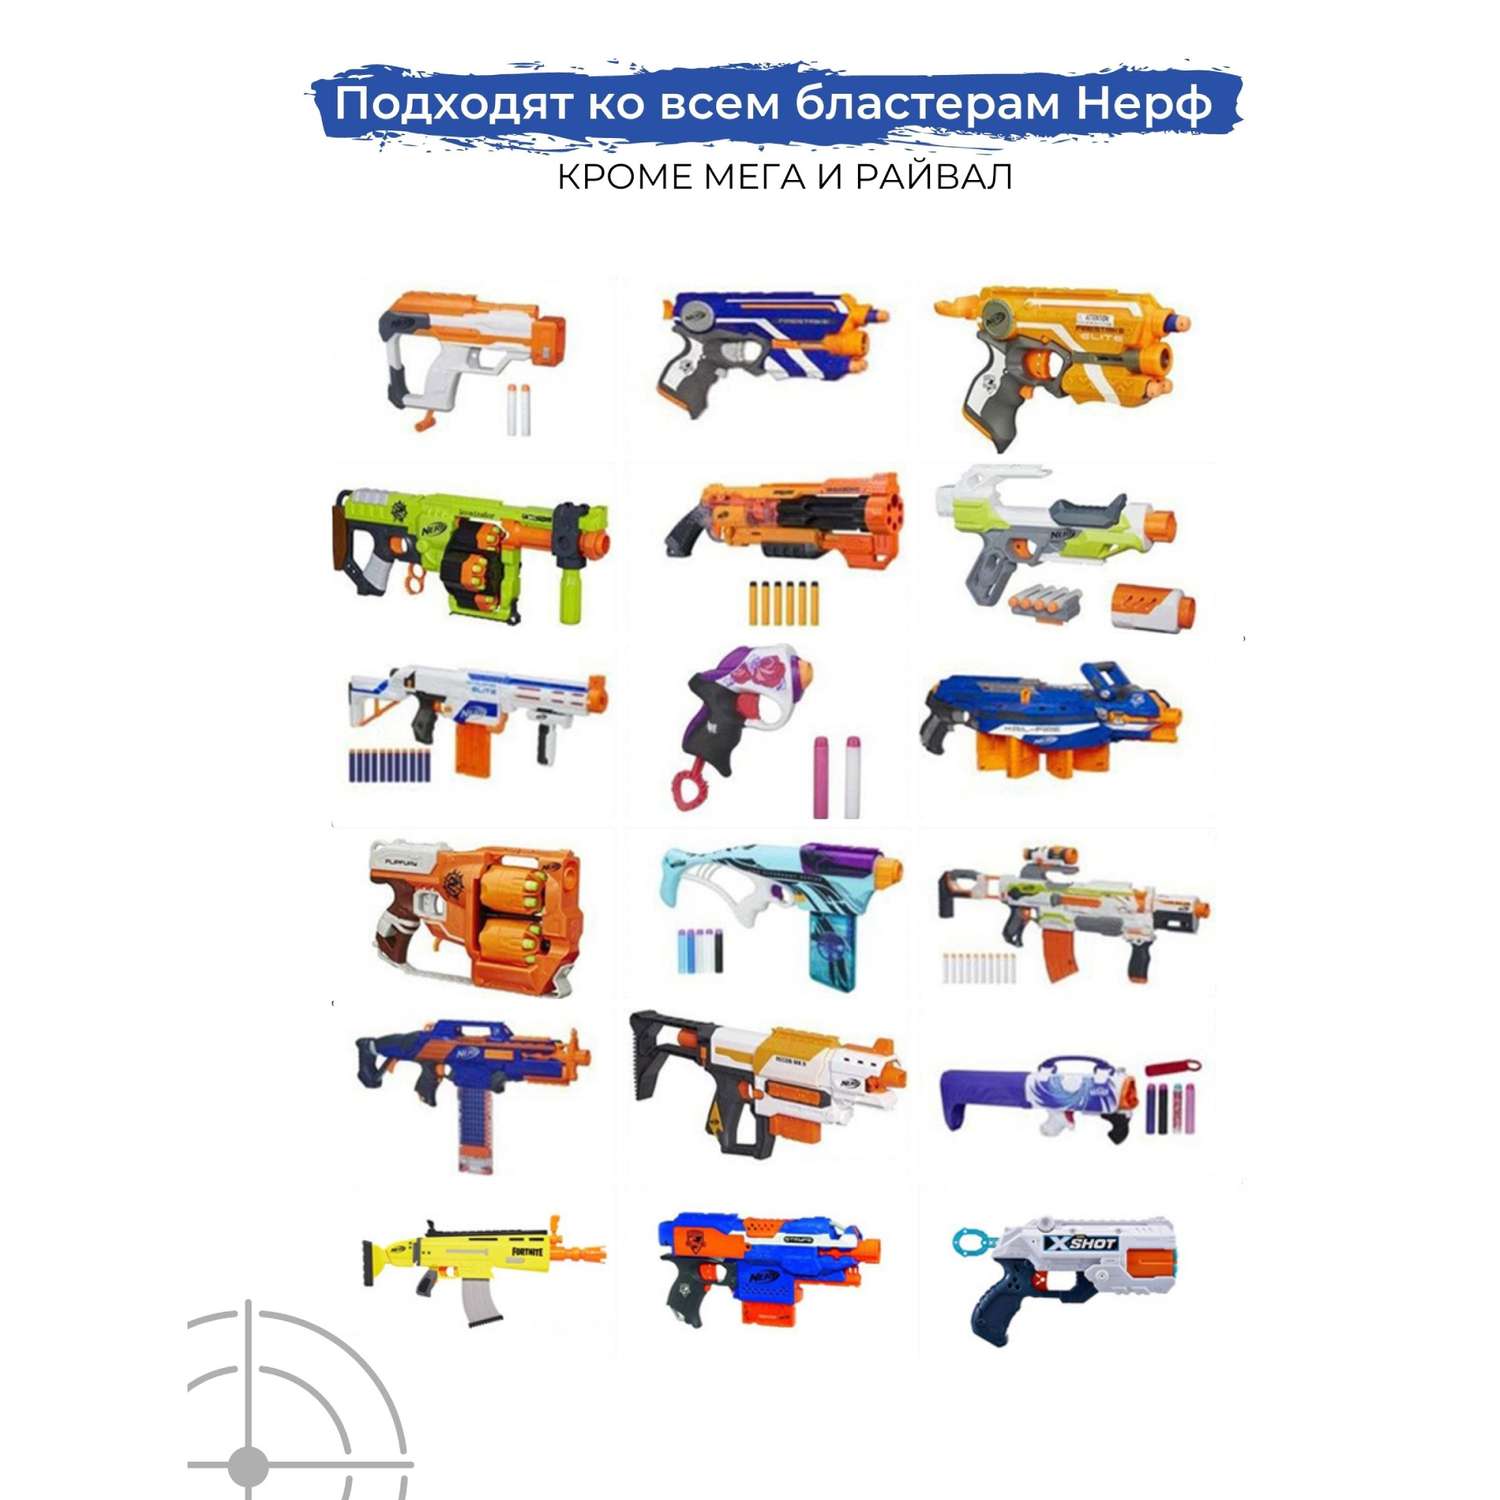 Набор игровой X-Treme Shooter браслет-патронташ и мягкие пули для бластера Нерф - фото 13